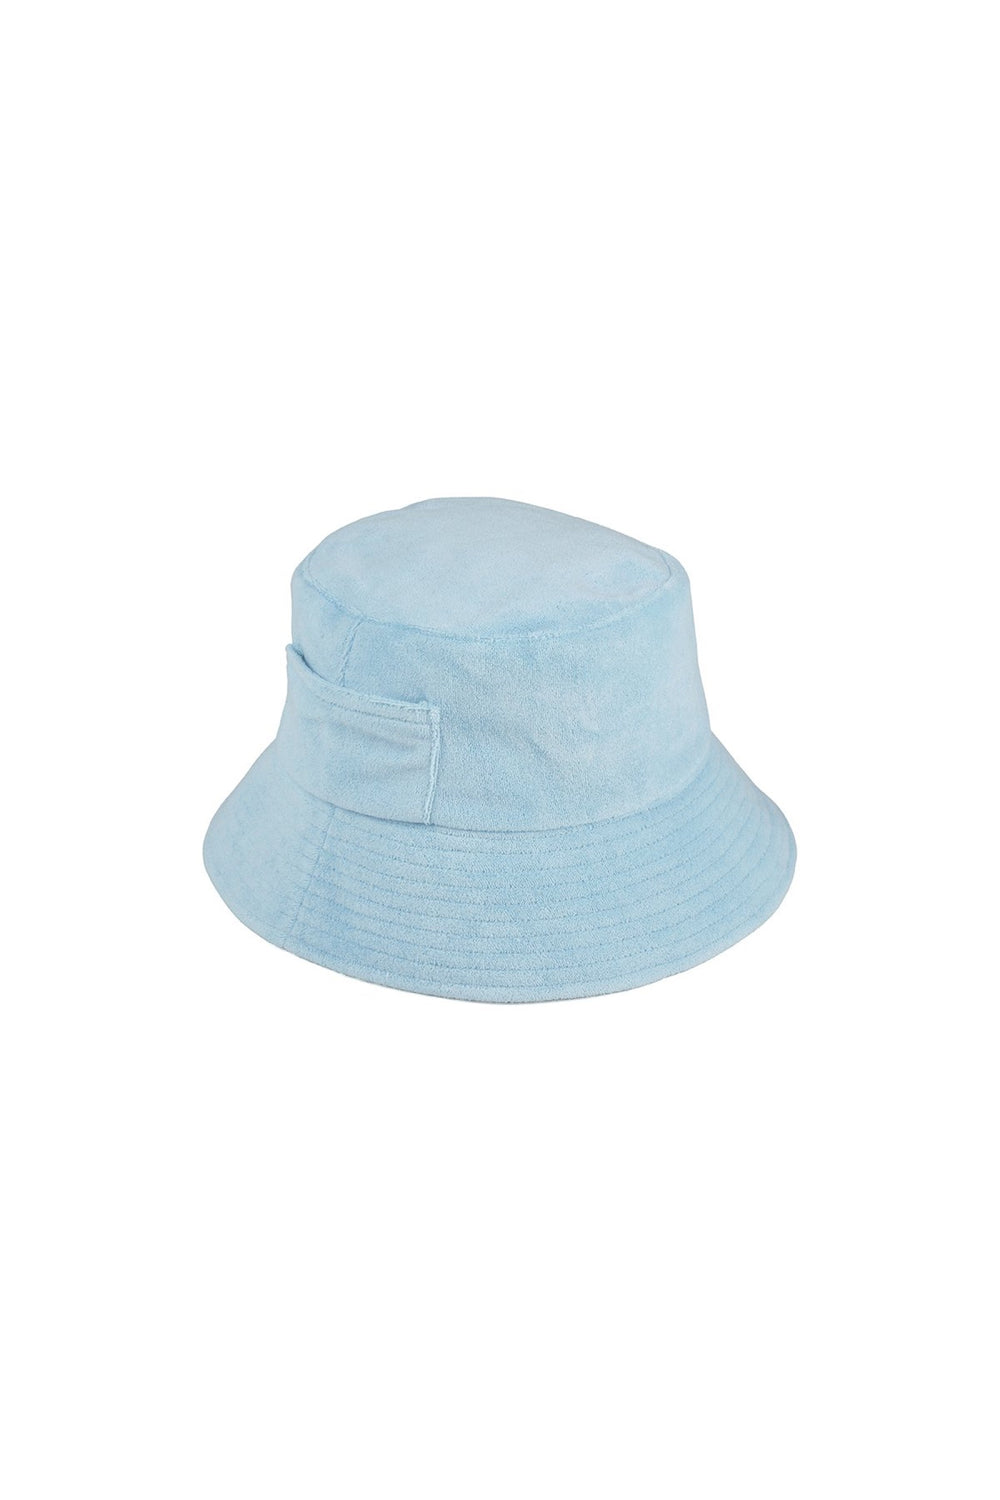 Aqua Terry Wave Bucket Hat